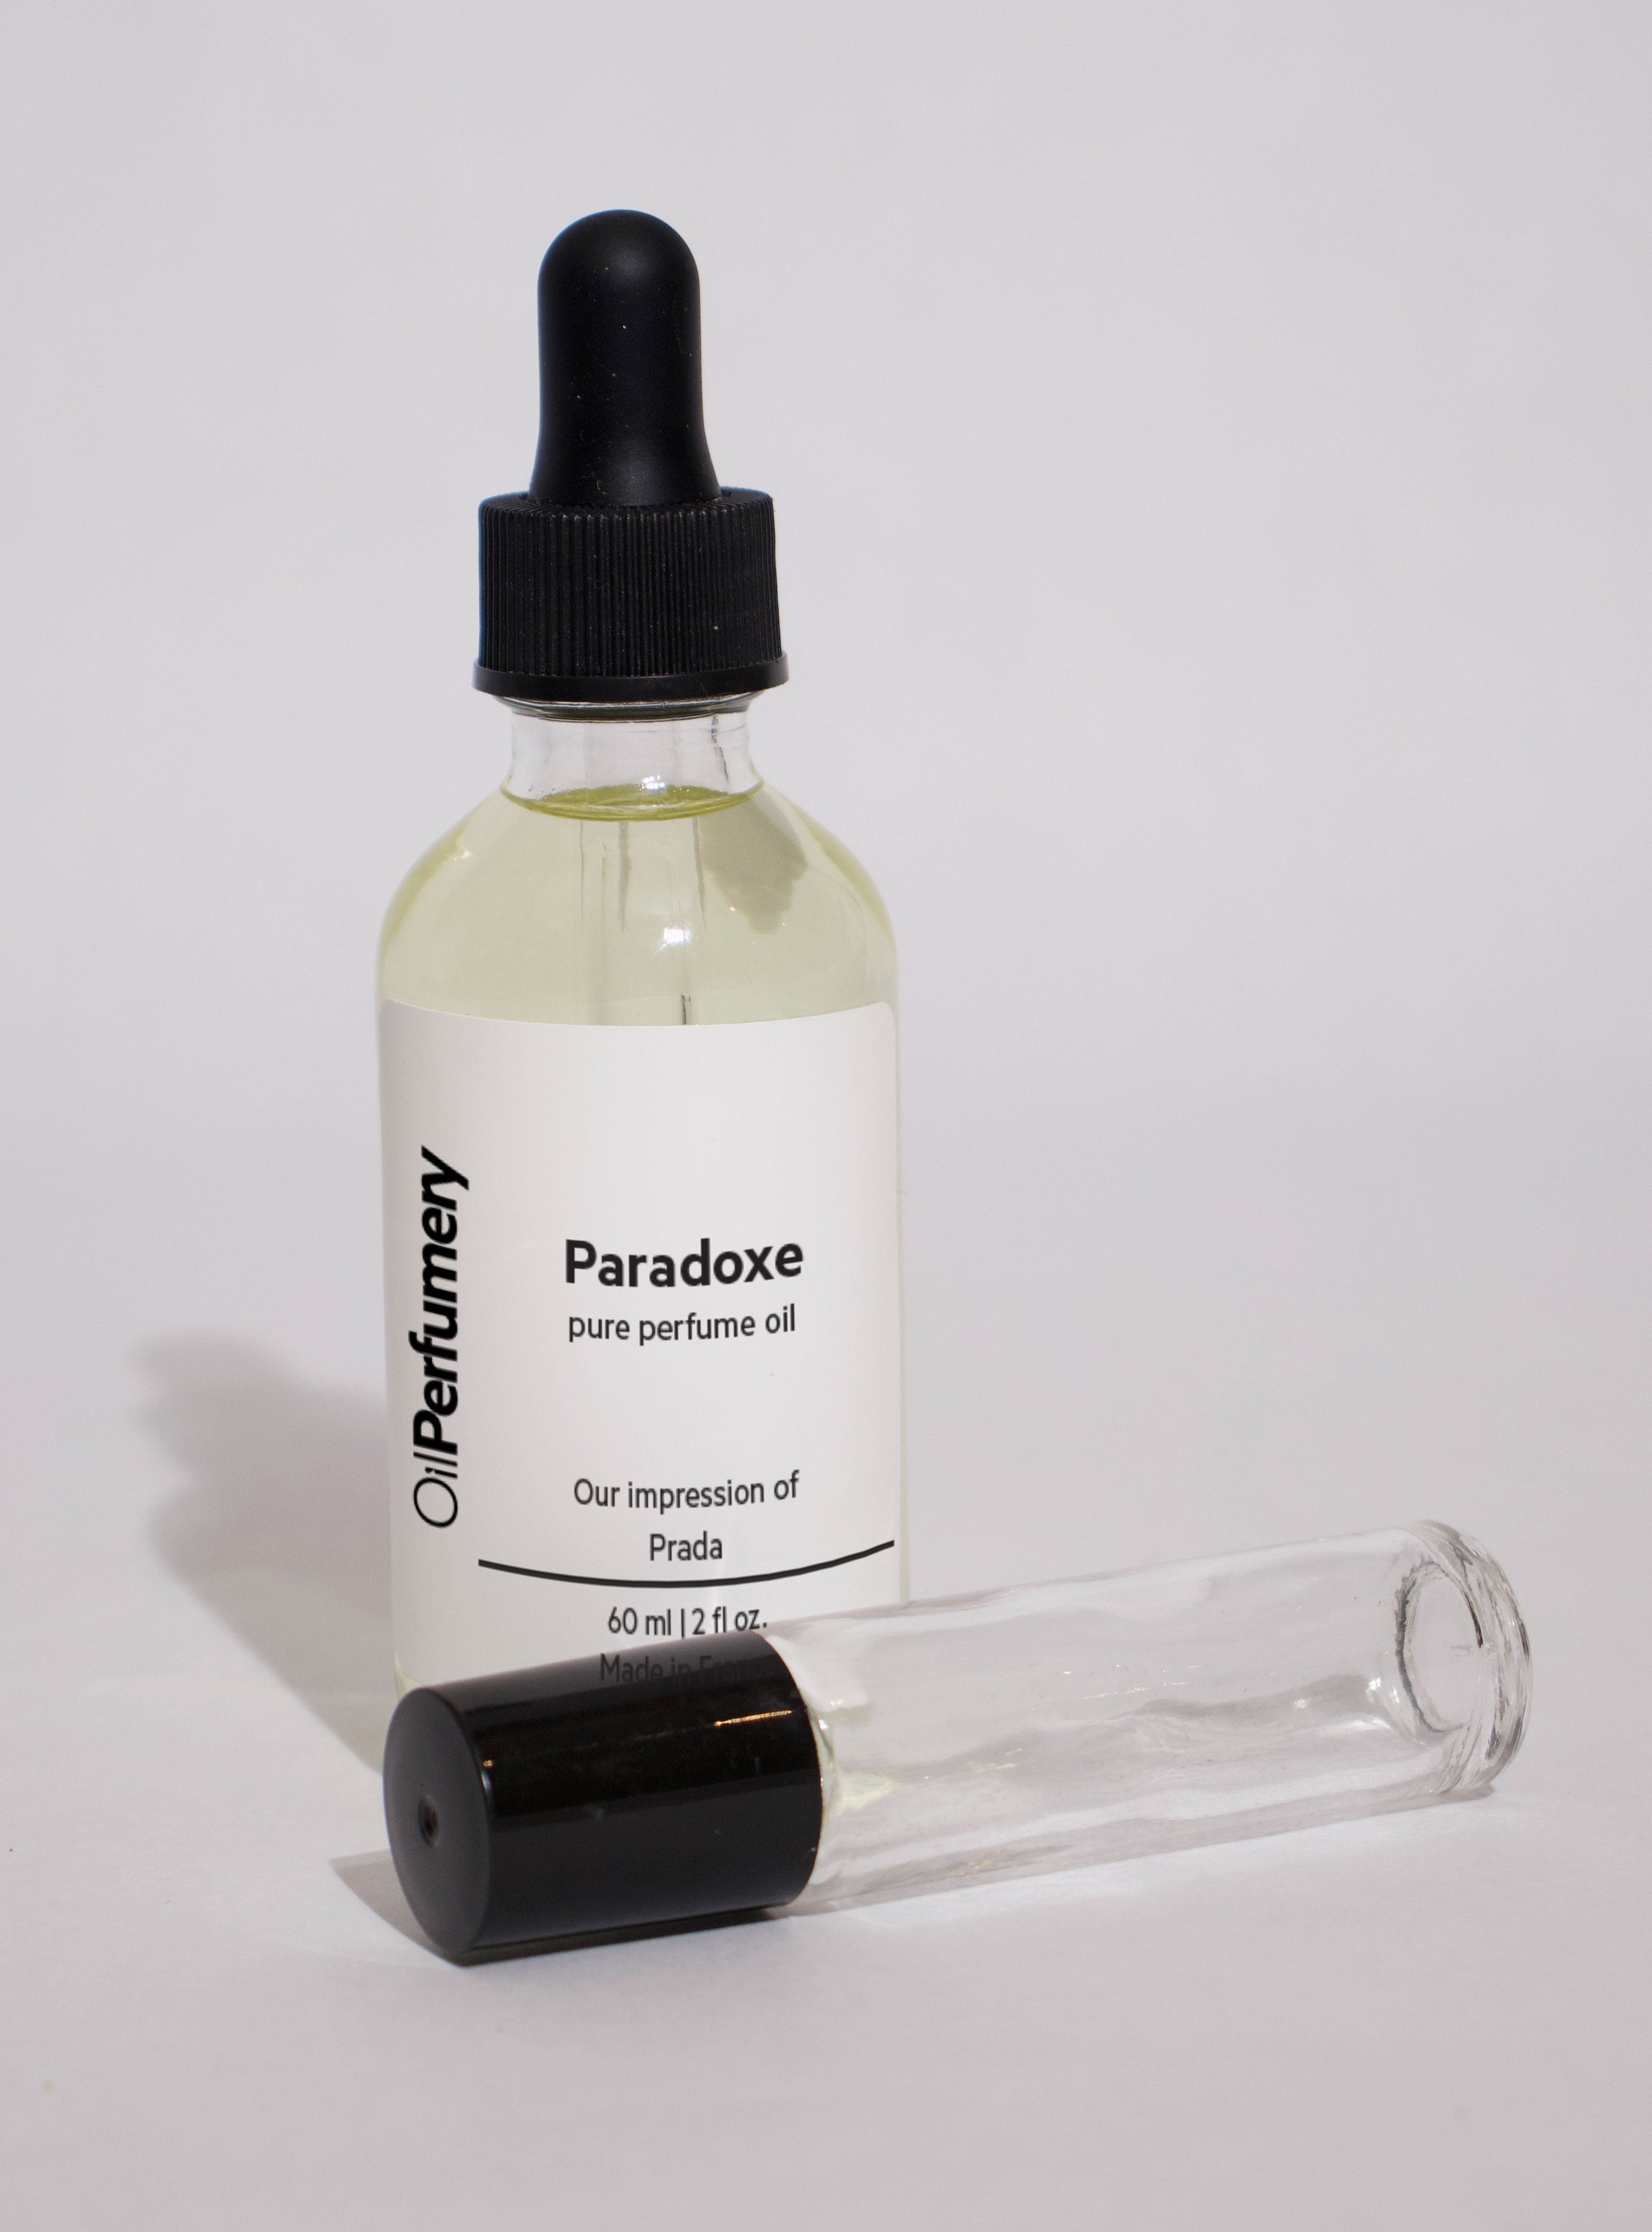 Oil Perfumery Impression of Prada - Paradoxe